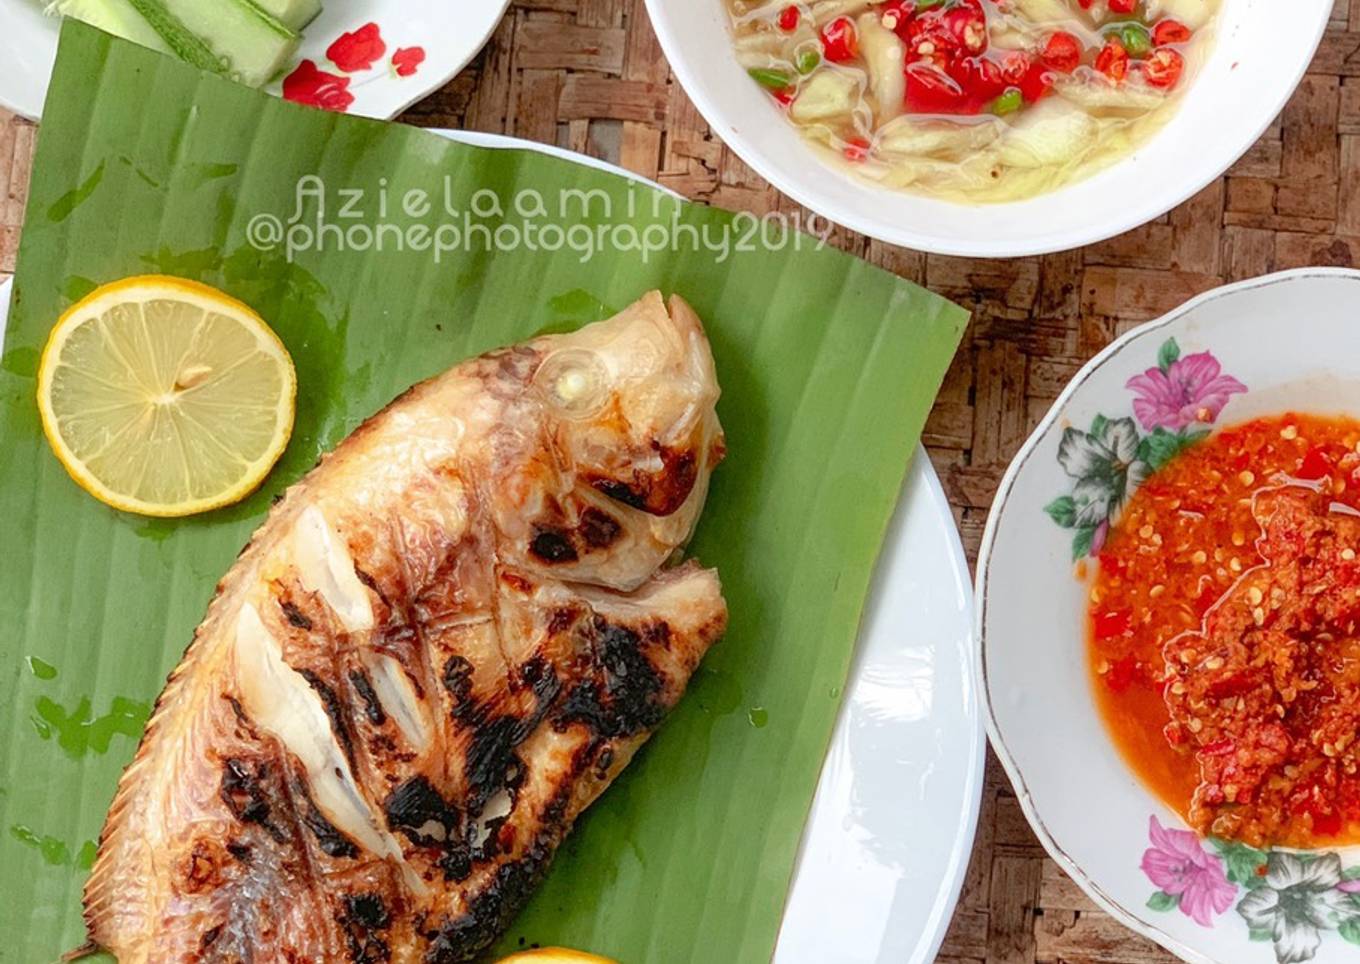 Resepi Ikan Talapia Bakar
#marathonRaya
#ikan
#minggu3 yang Menggugah Selera dan Easy